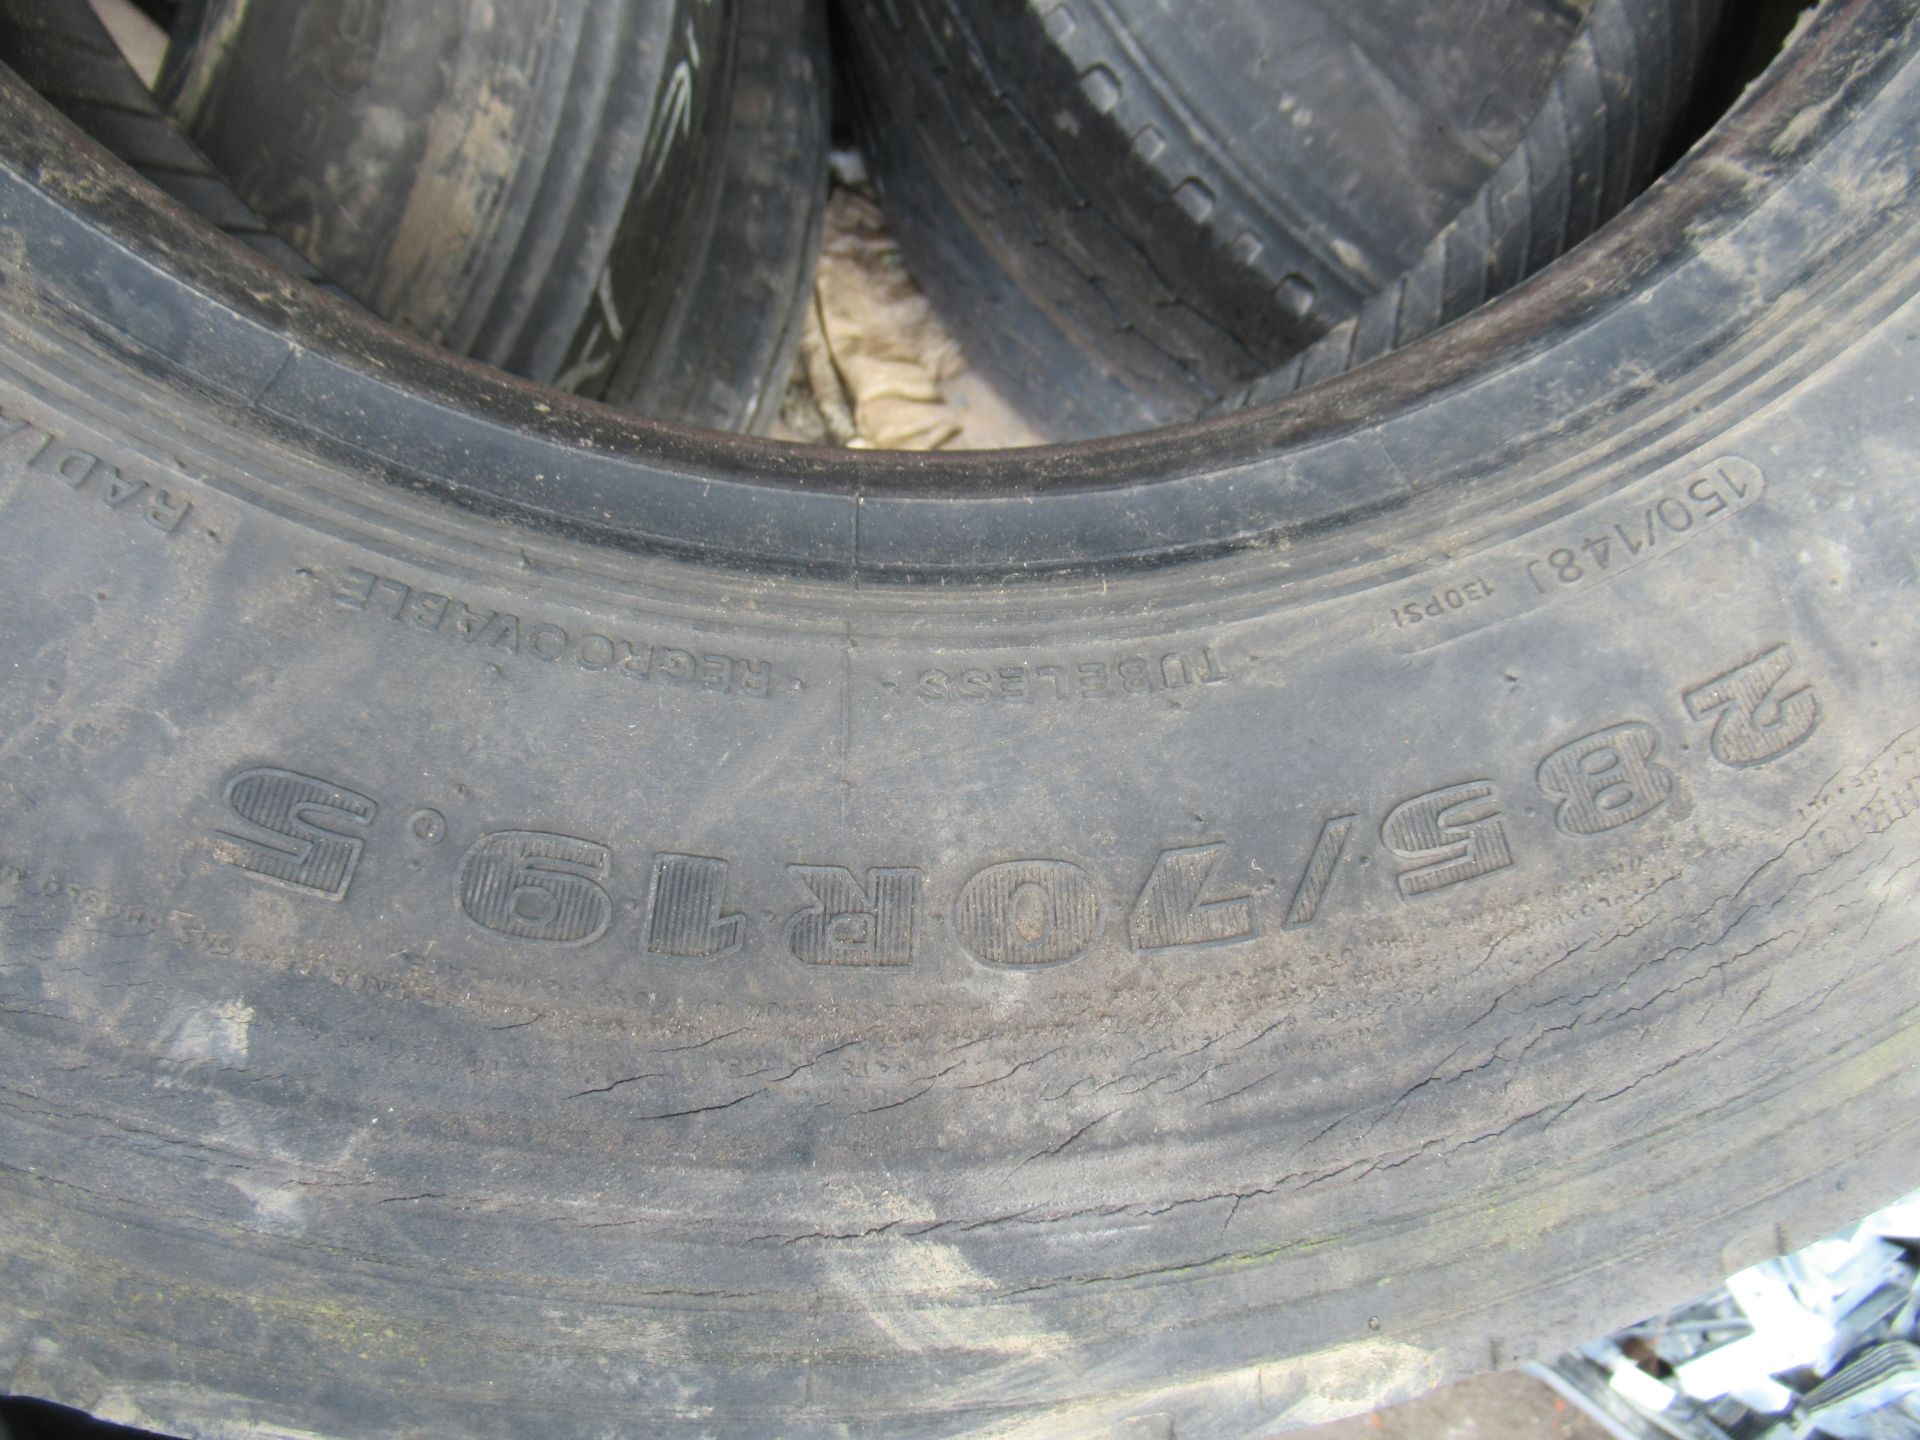 5x Partworn Tyres ( 285/70R/19.5, 245/70R/19.5, 245/70R/19.5, 285/70R/19.5, 245/70R/19.5) - Image 2 of 7